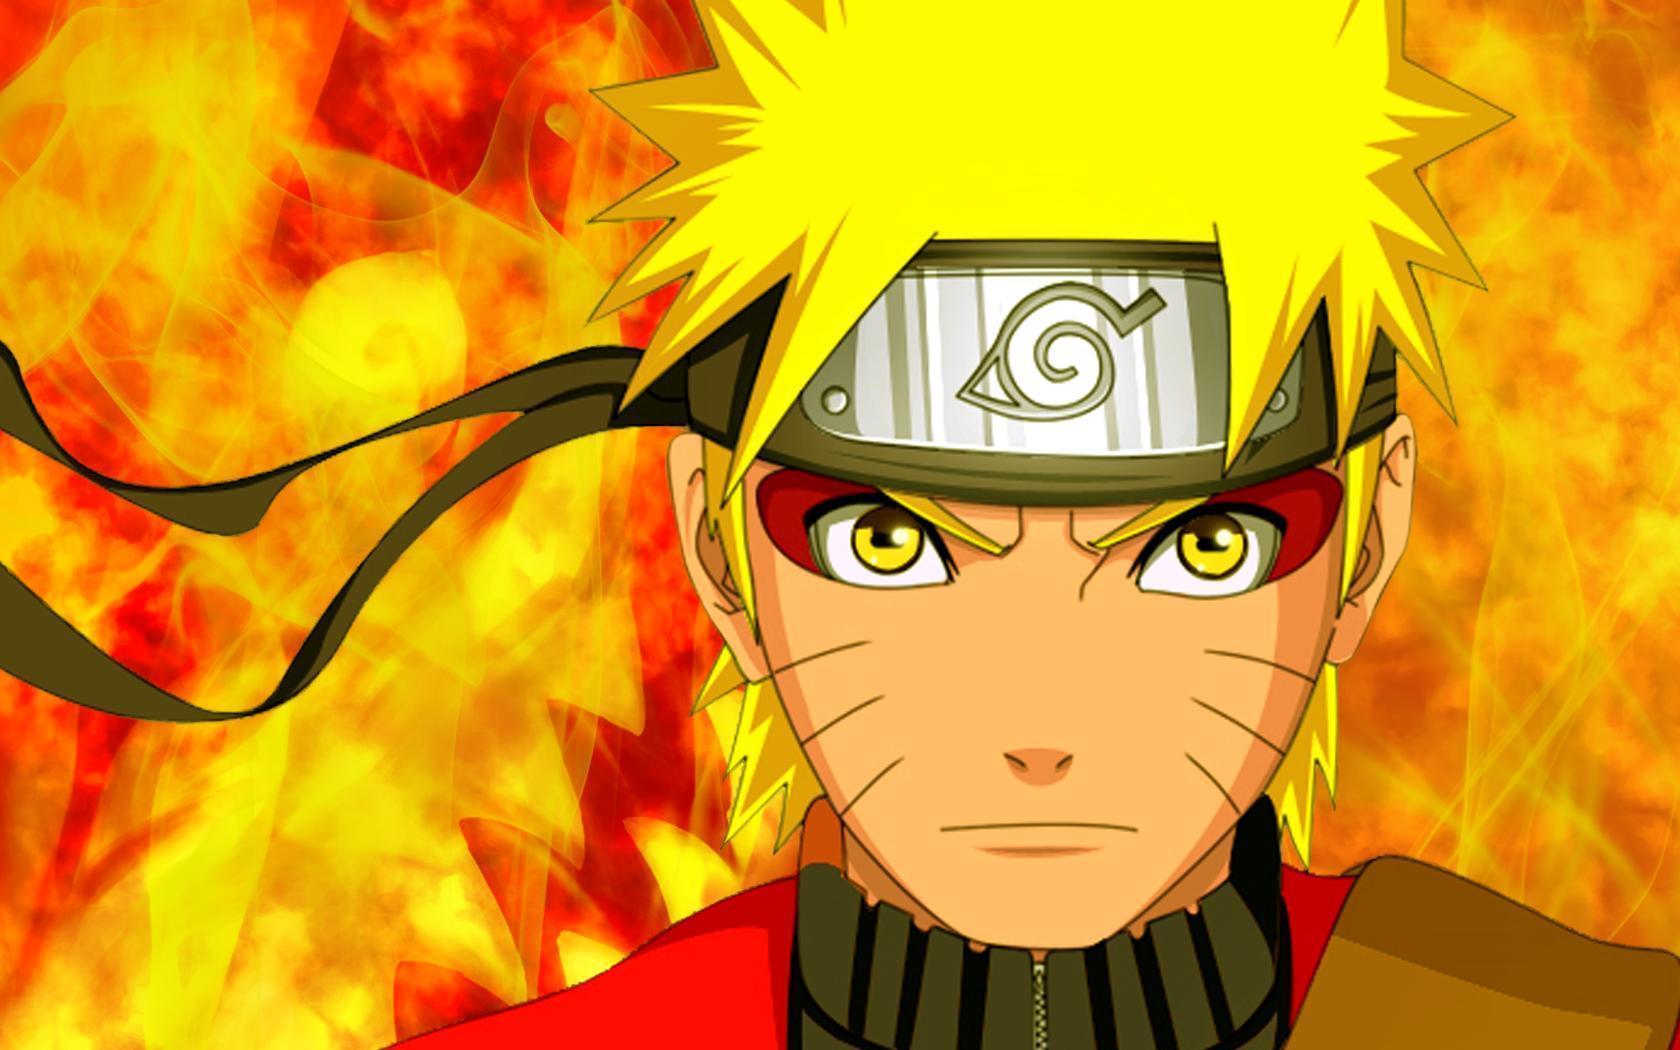 Hình nền Naruto Sage Mode sẽ mang đến cho bạn sự bình tĩnh và thư giãn. Dễ dàng đắm chìm trong trạng thái mê hoặc này chỉ qua hình nền của bạn. Hãy tận hưởng cảm giác yên bình mà Naruto Sage Mode đem lại nhé.